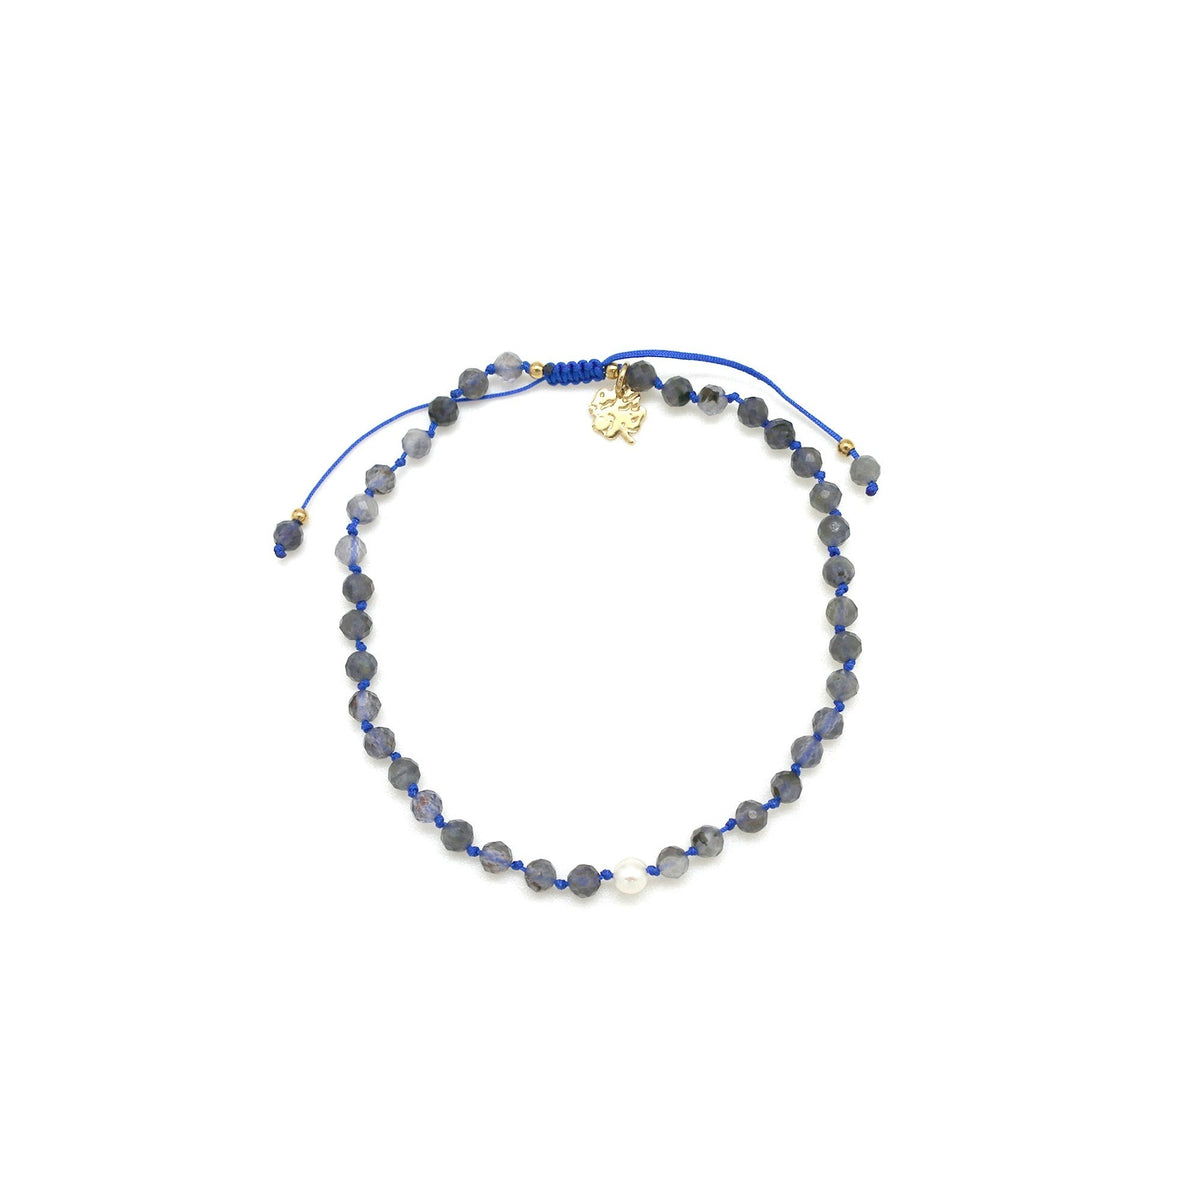 Adjustable cordierite bracelet with water pearl